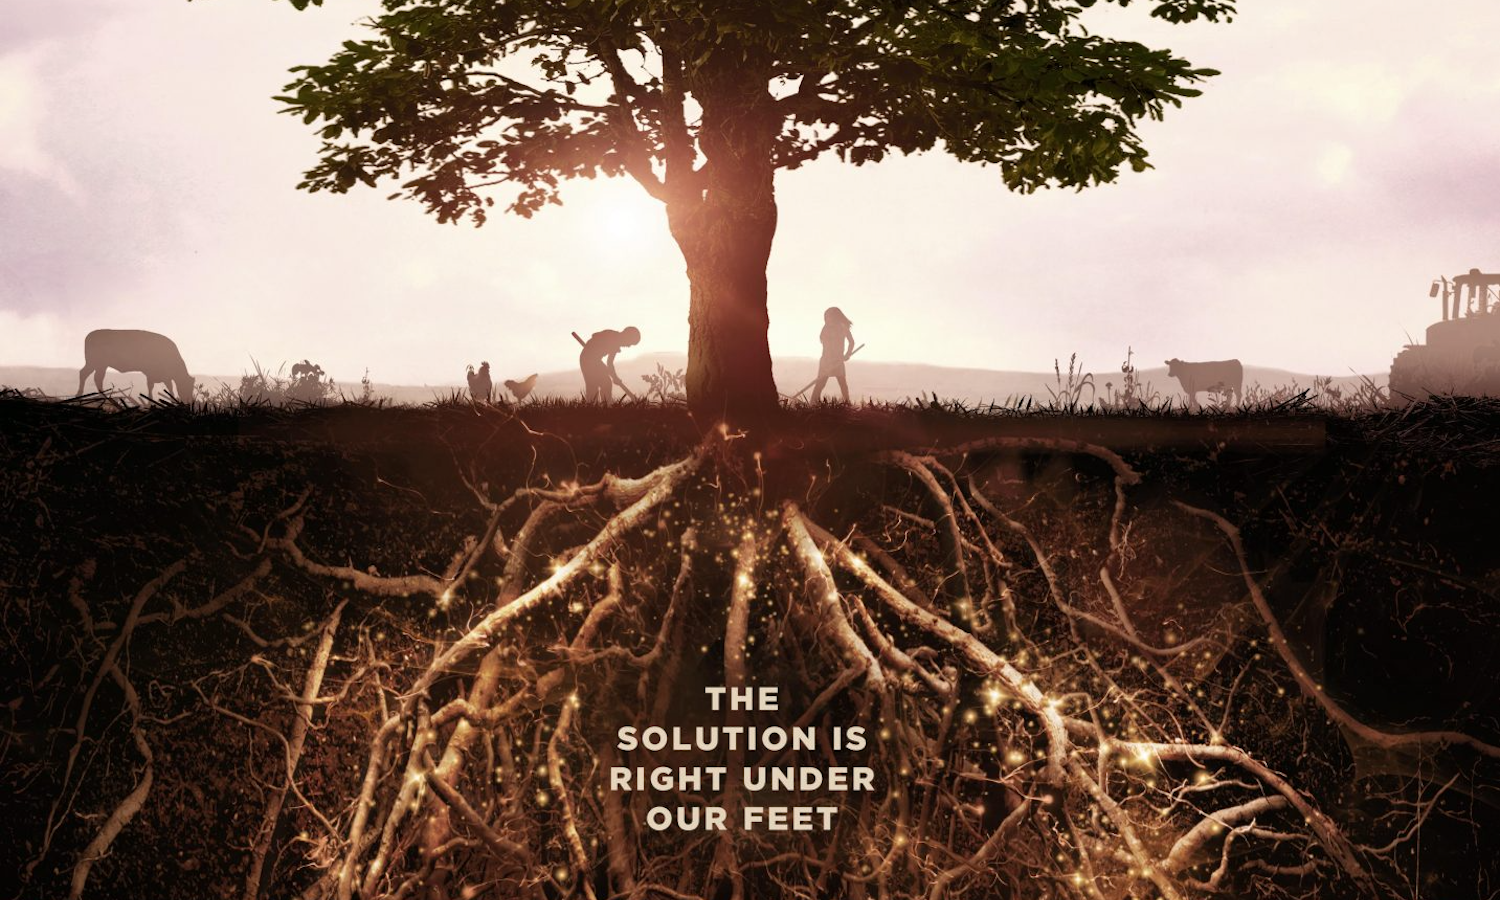 亲吻地面，这是一部新电影，于9月22日在Netflix上首映，旨在激发行动和土壤再生